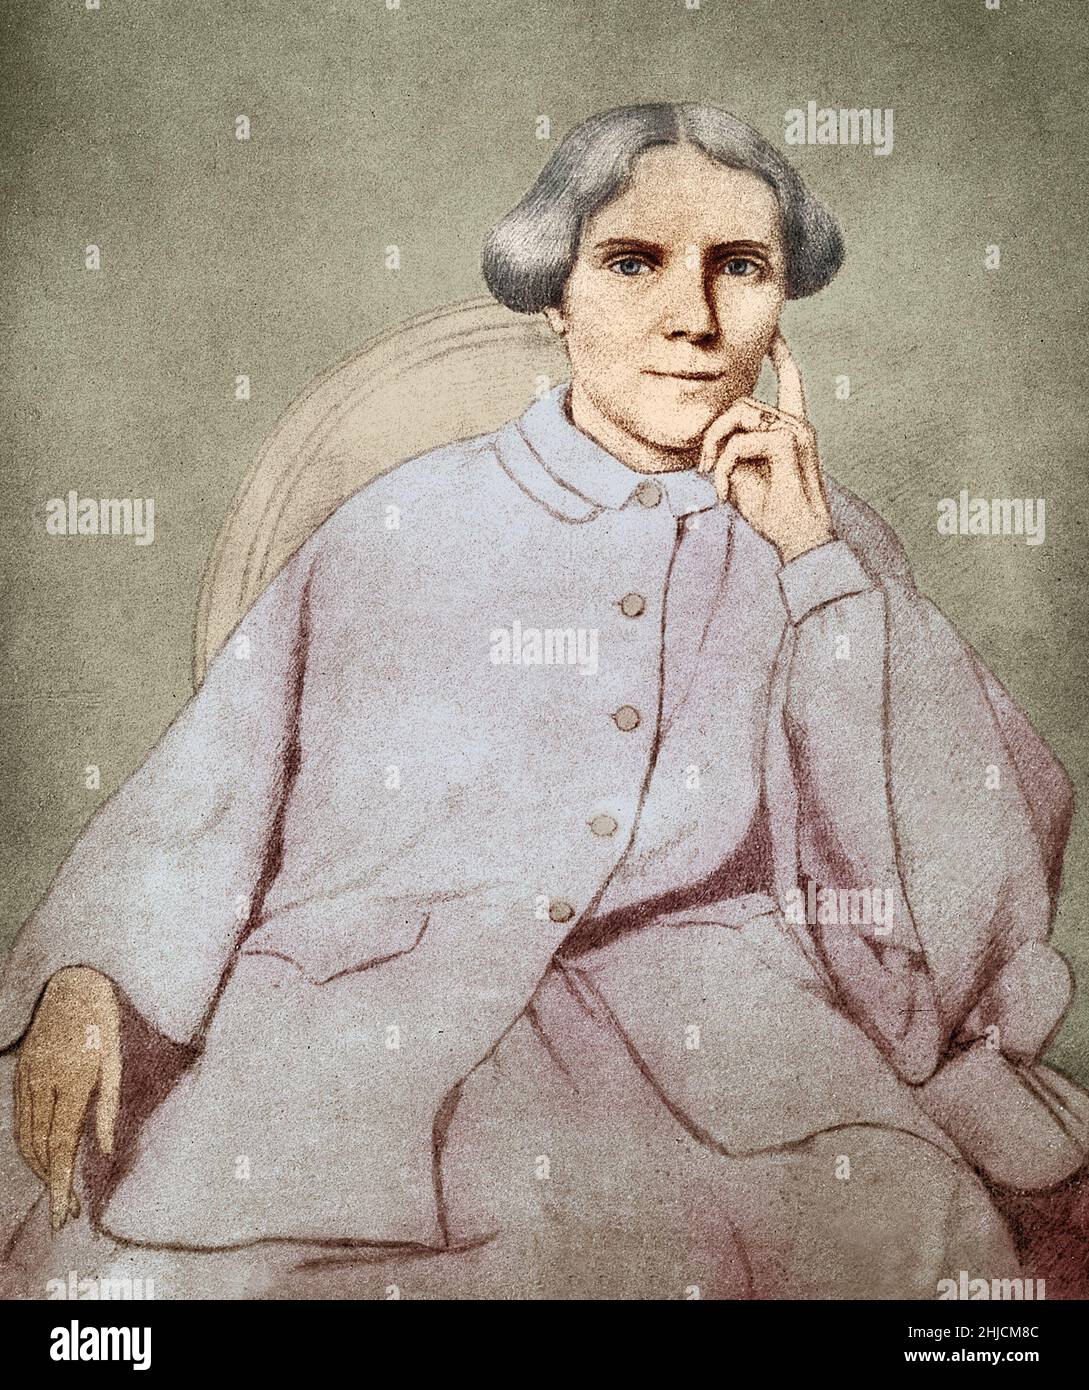 Kolorierte Illustration der britischen Ärztin Elizabeth Blackwell (3. Februar 1821 - 31. Mai 1910), besonders bemerkenswert, weil sie die erste Frau war, die einen medizinischen Abschluss in den Vereinigten Staaten erwarb. Nach einem Druck nach einer Skizze der Gräfin de Charnaccie, 1859. Stockfoto